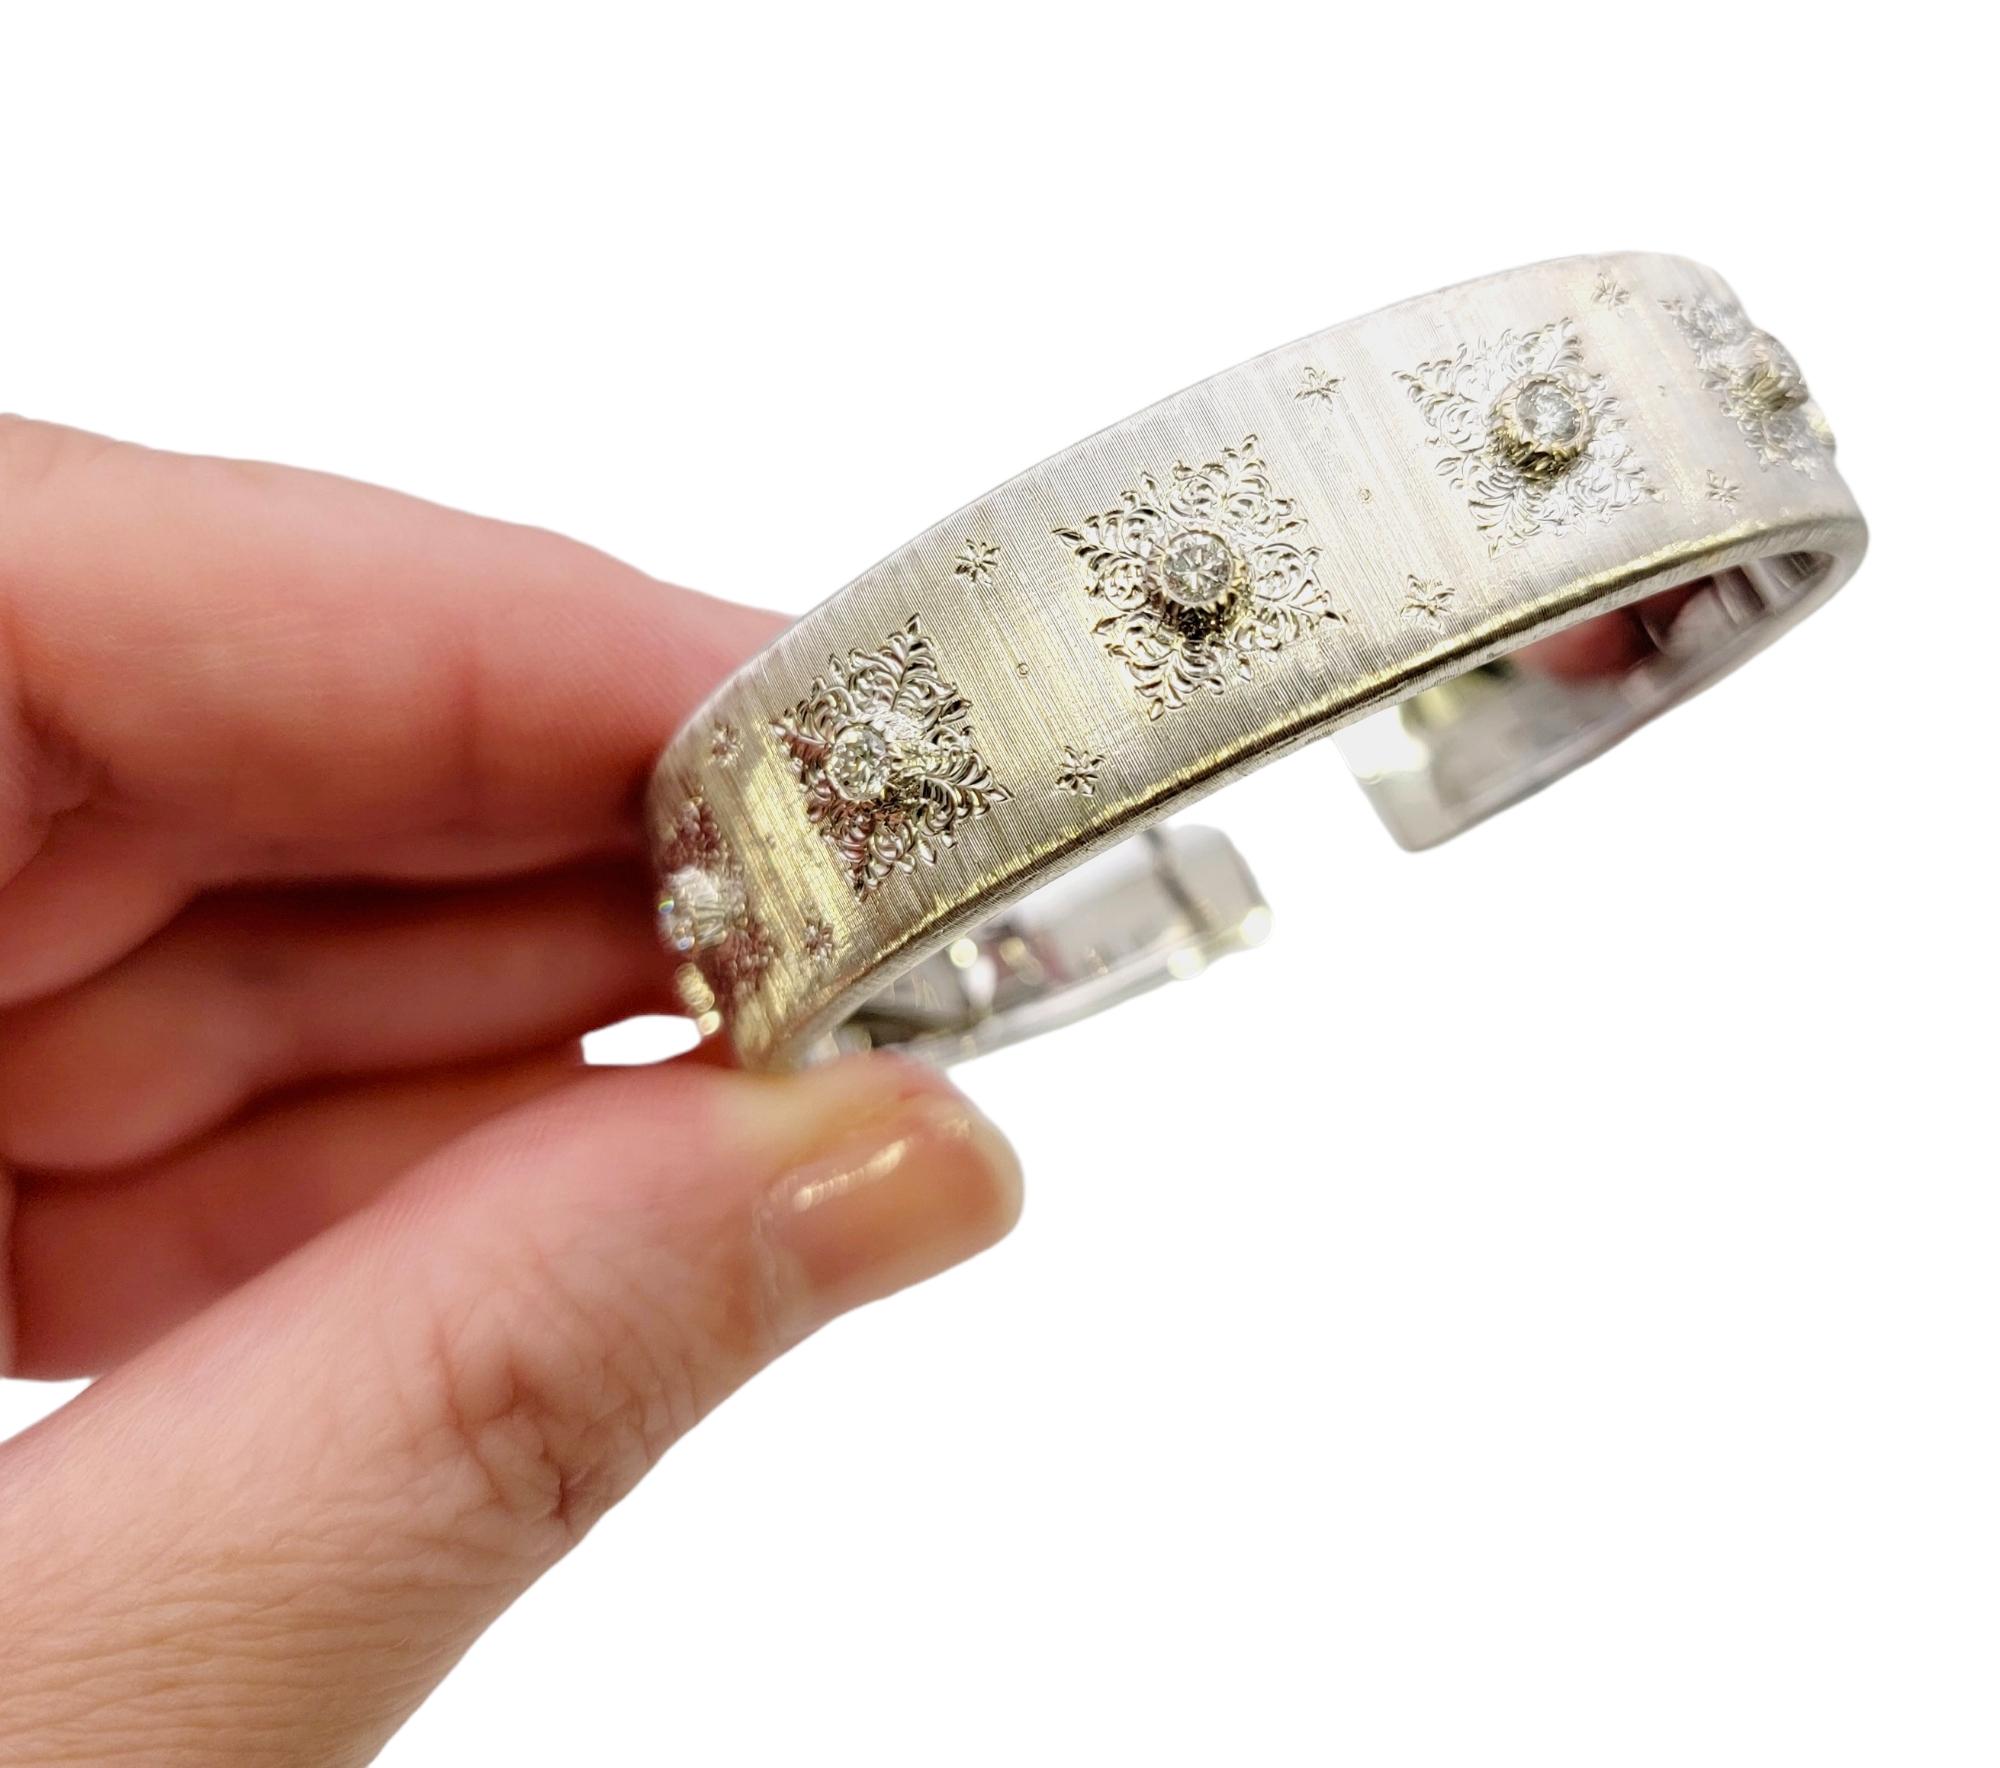 Mario Buccellati 18 Karat Rigato Finish White Gold and Diamond Cuff Bracelet For Sale 5